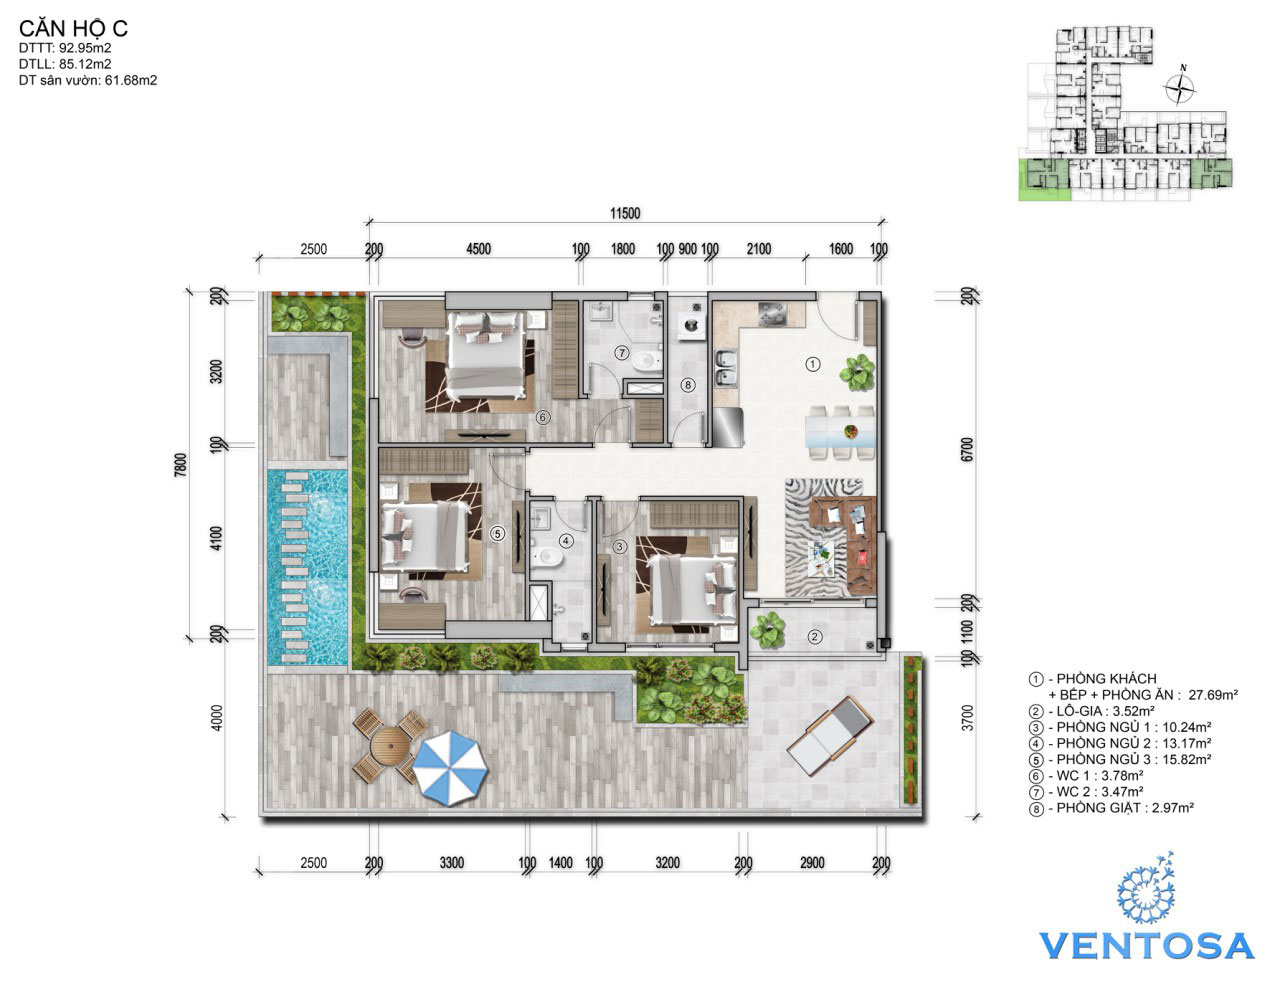 Loại căn hộ điển hình - 3 phòng ngủ tại dự án Ventosa Quận 5